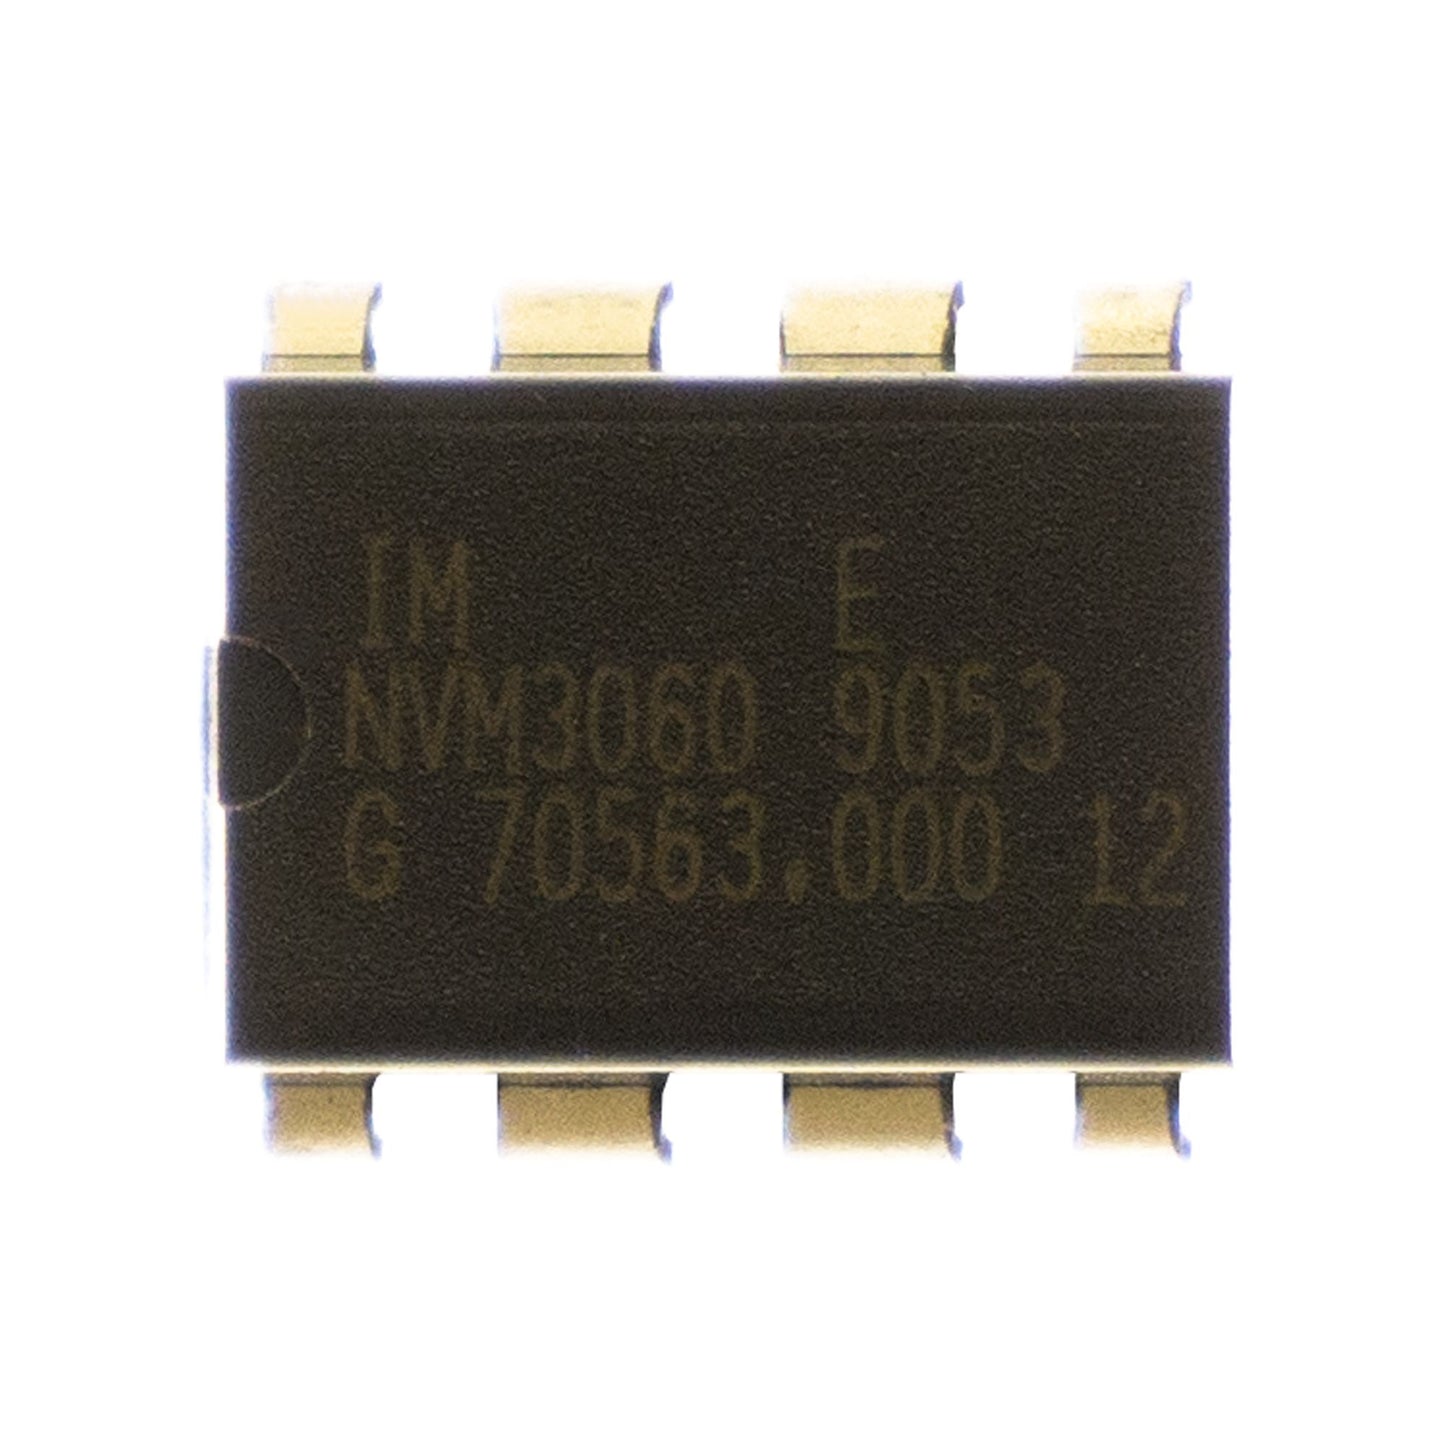 NVM30609053 circuito integrato, transistor, componente elettronico, 8 contatti